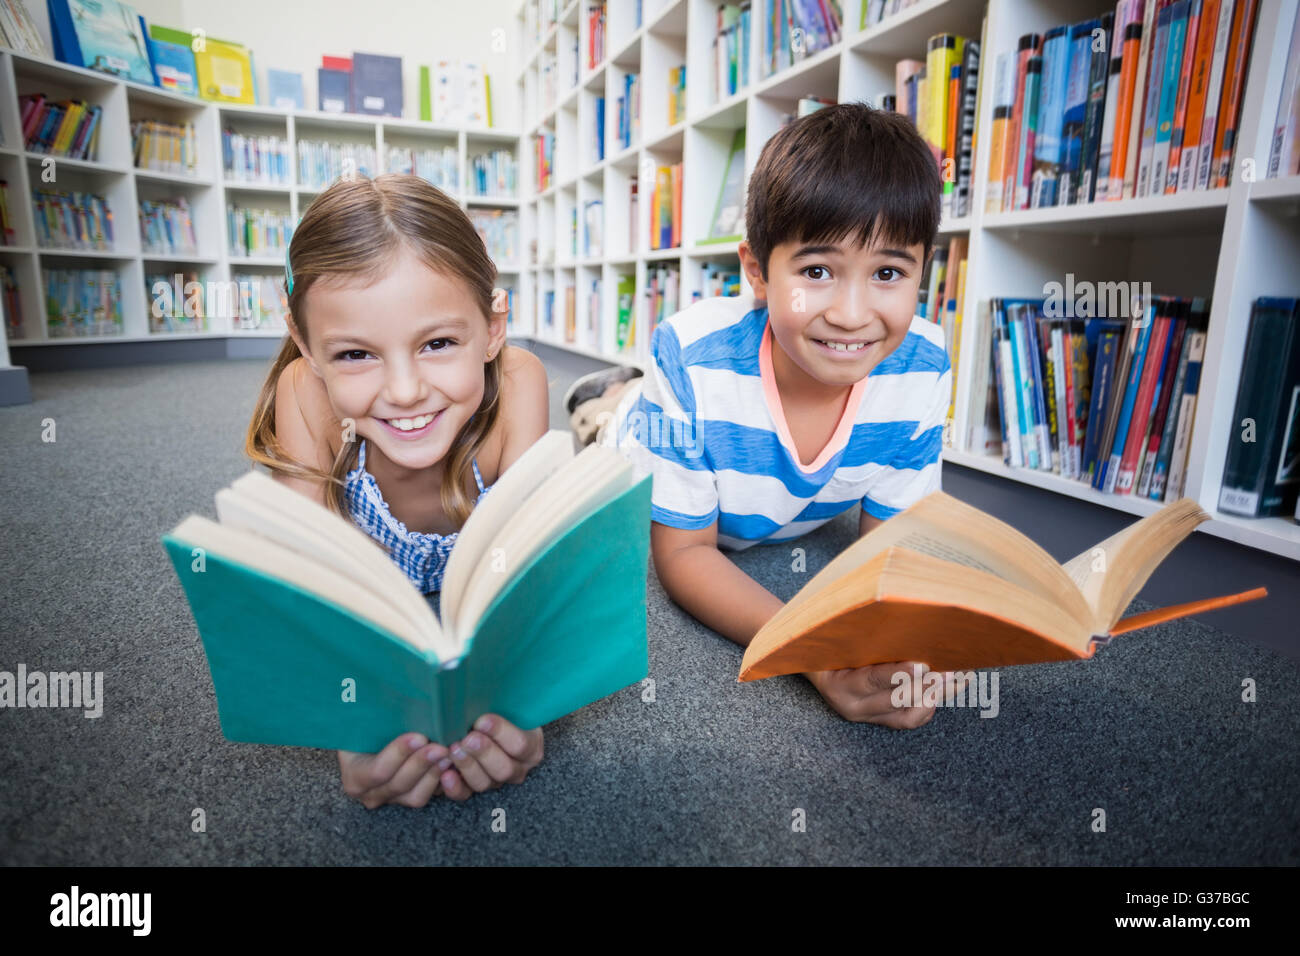 Glückliche Schulkinder am Boden liegen und ein Buch in der Bibliothek Stockfoto